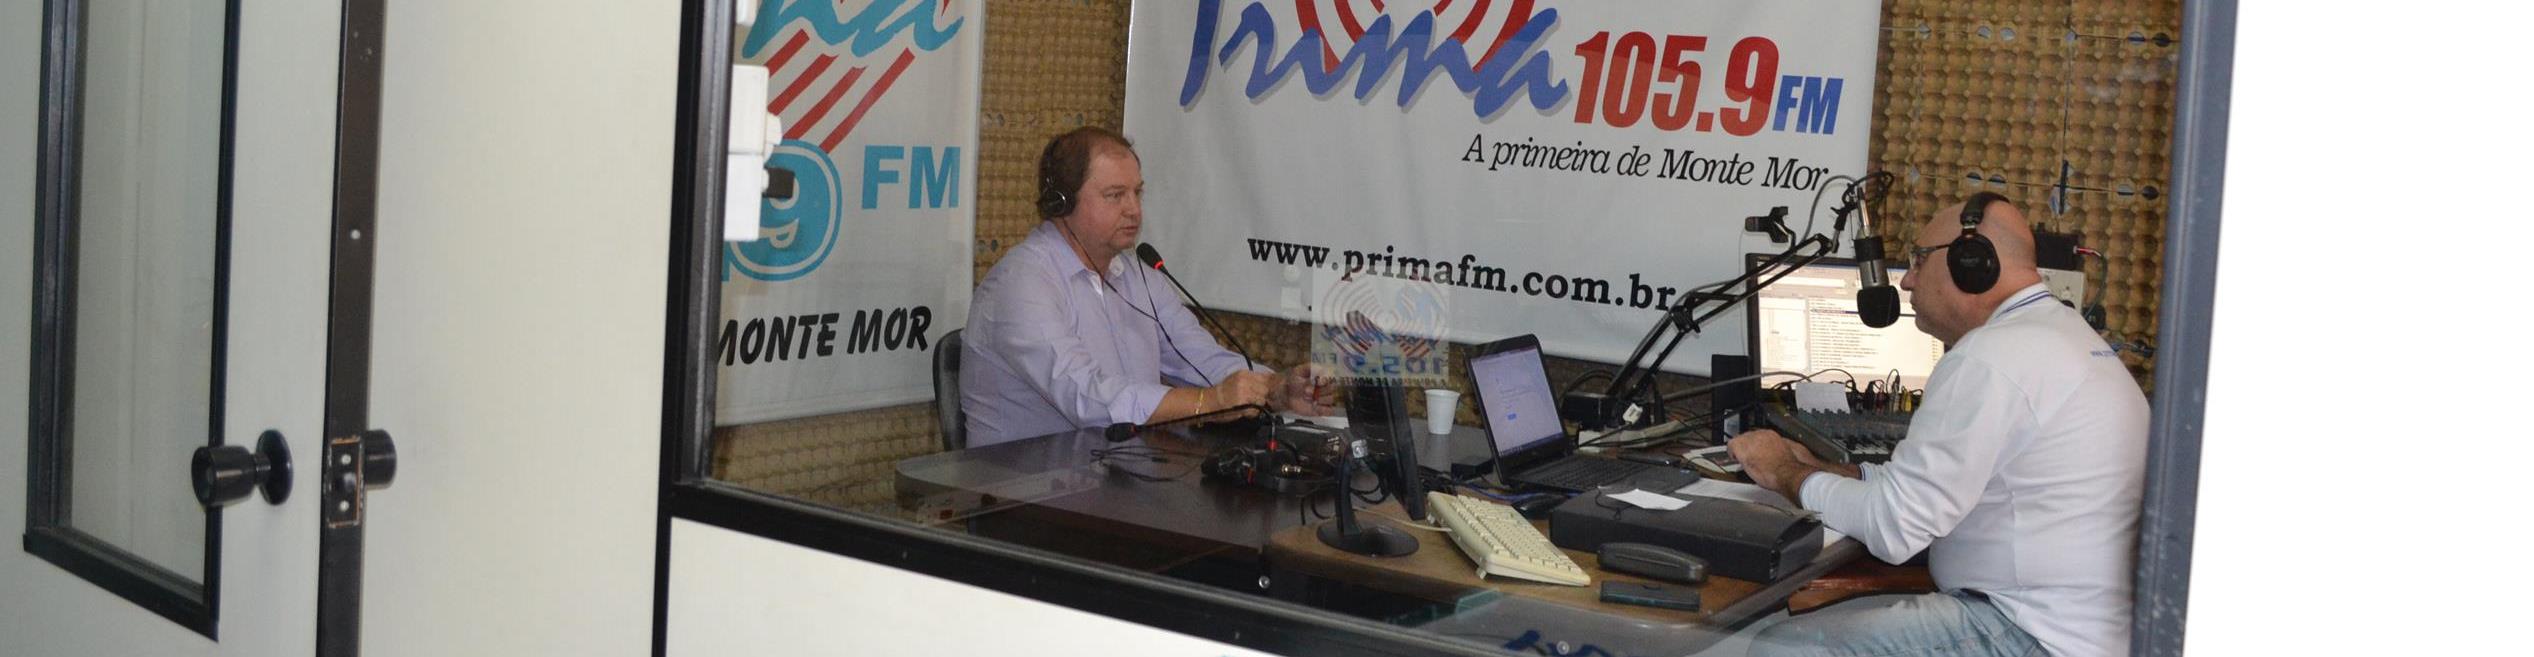 O vereador Vanderlei Soares, sendo entrevistado pelo jornalista Rage, na Rádio Prima